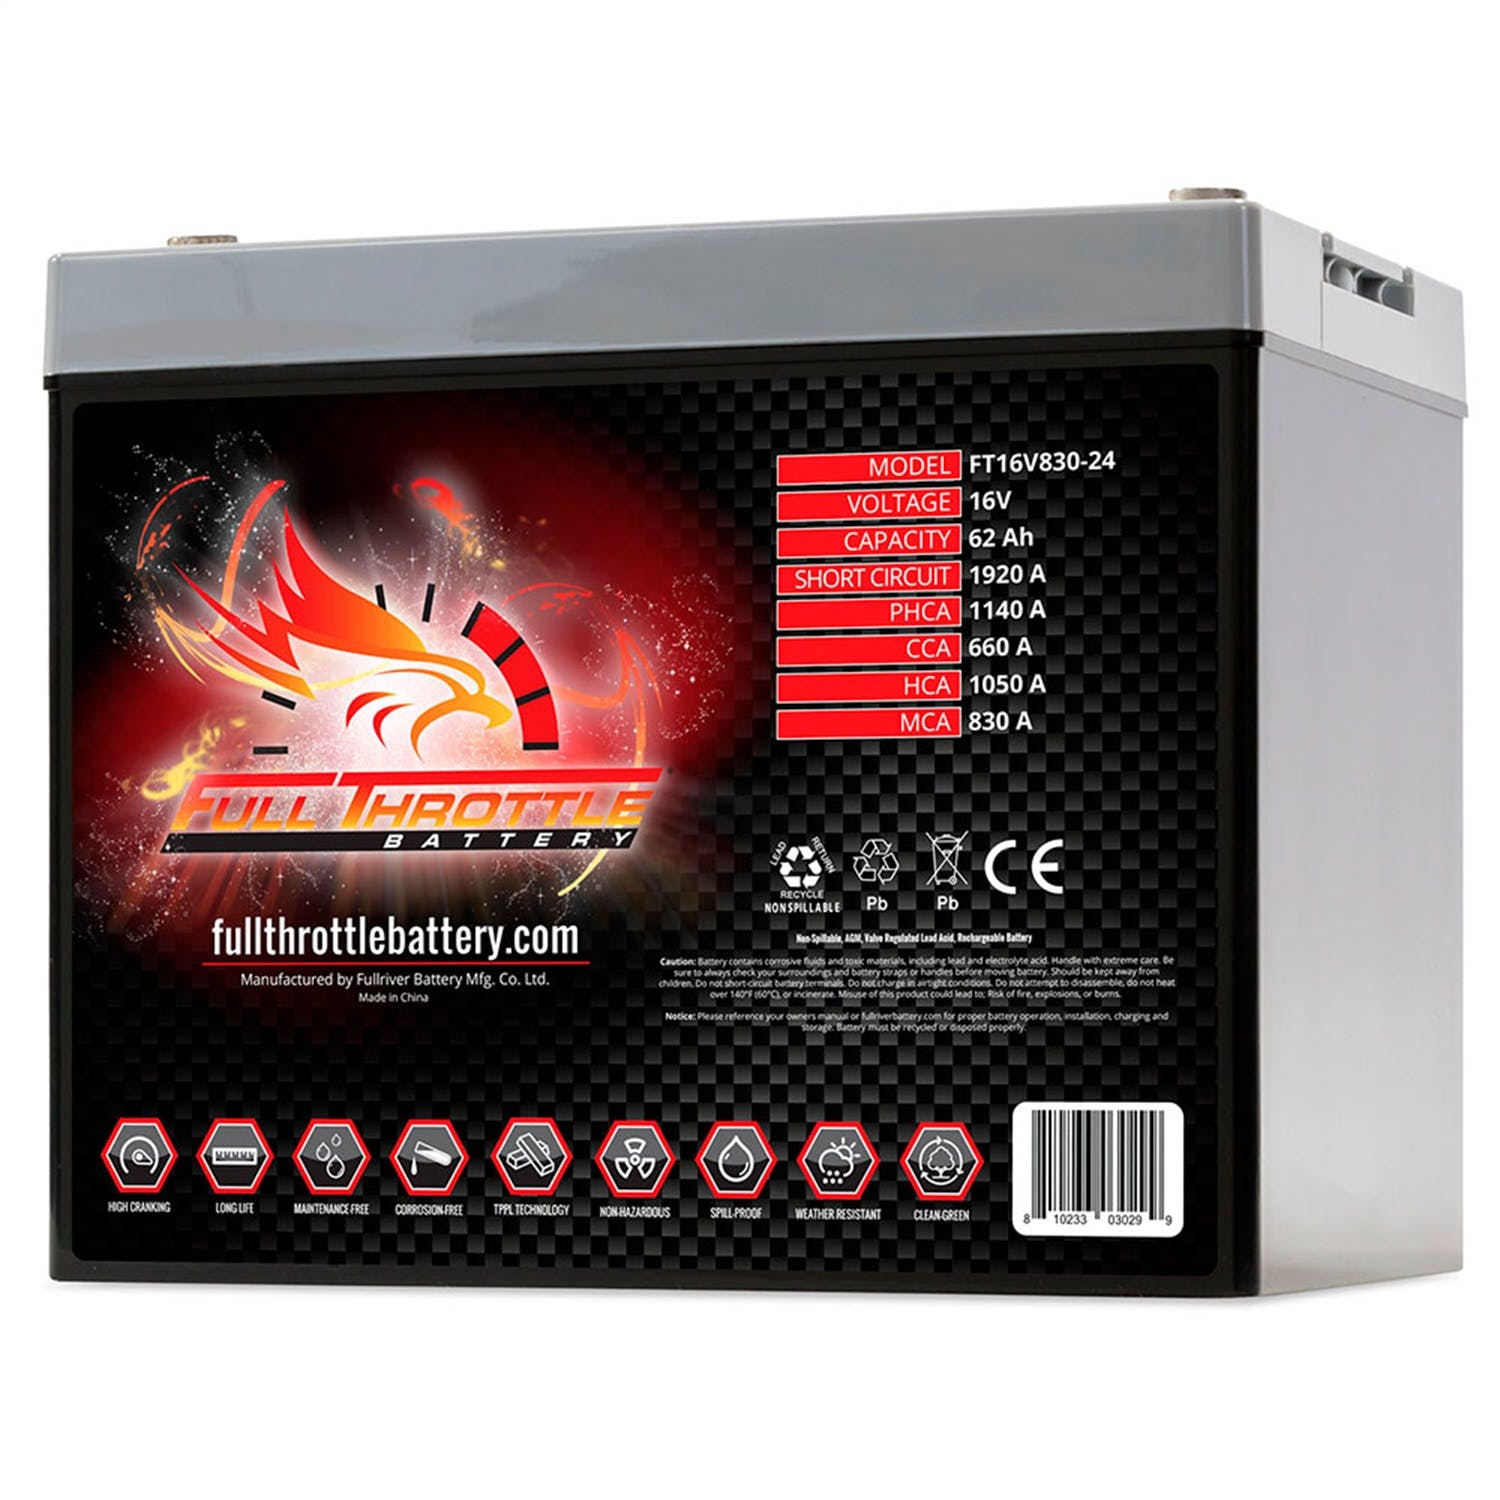 Fullriver Battery FT16V830-24 Full Throttle 16V Automotive Battery